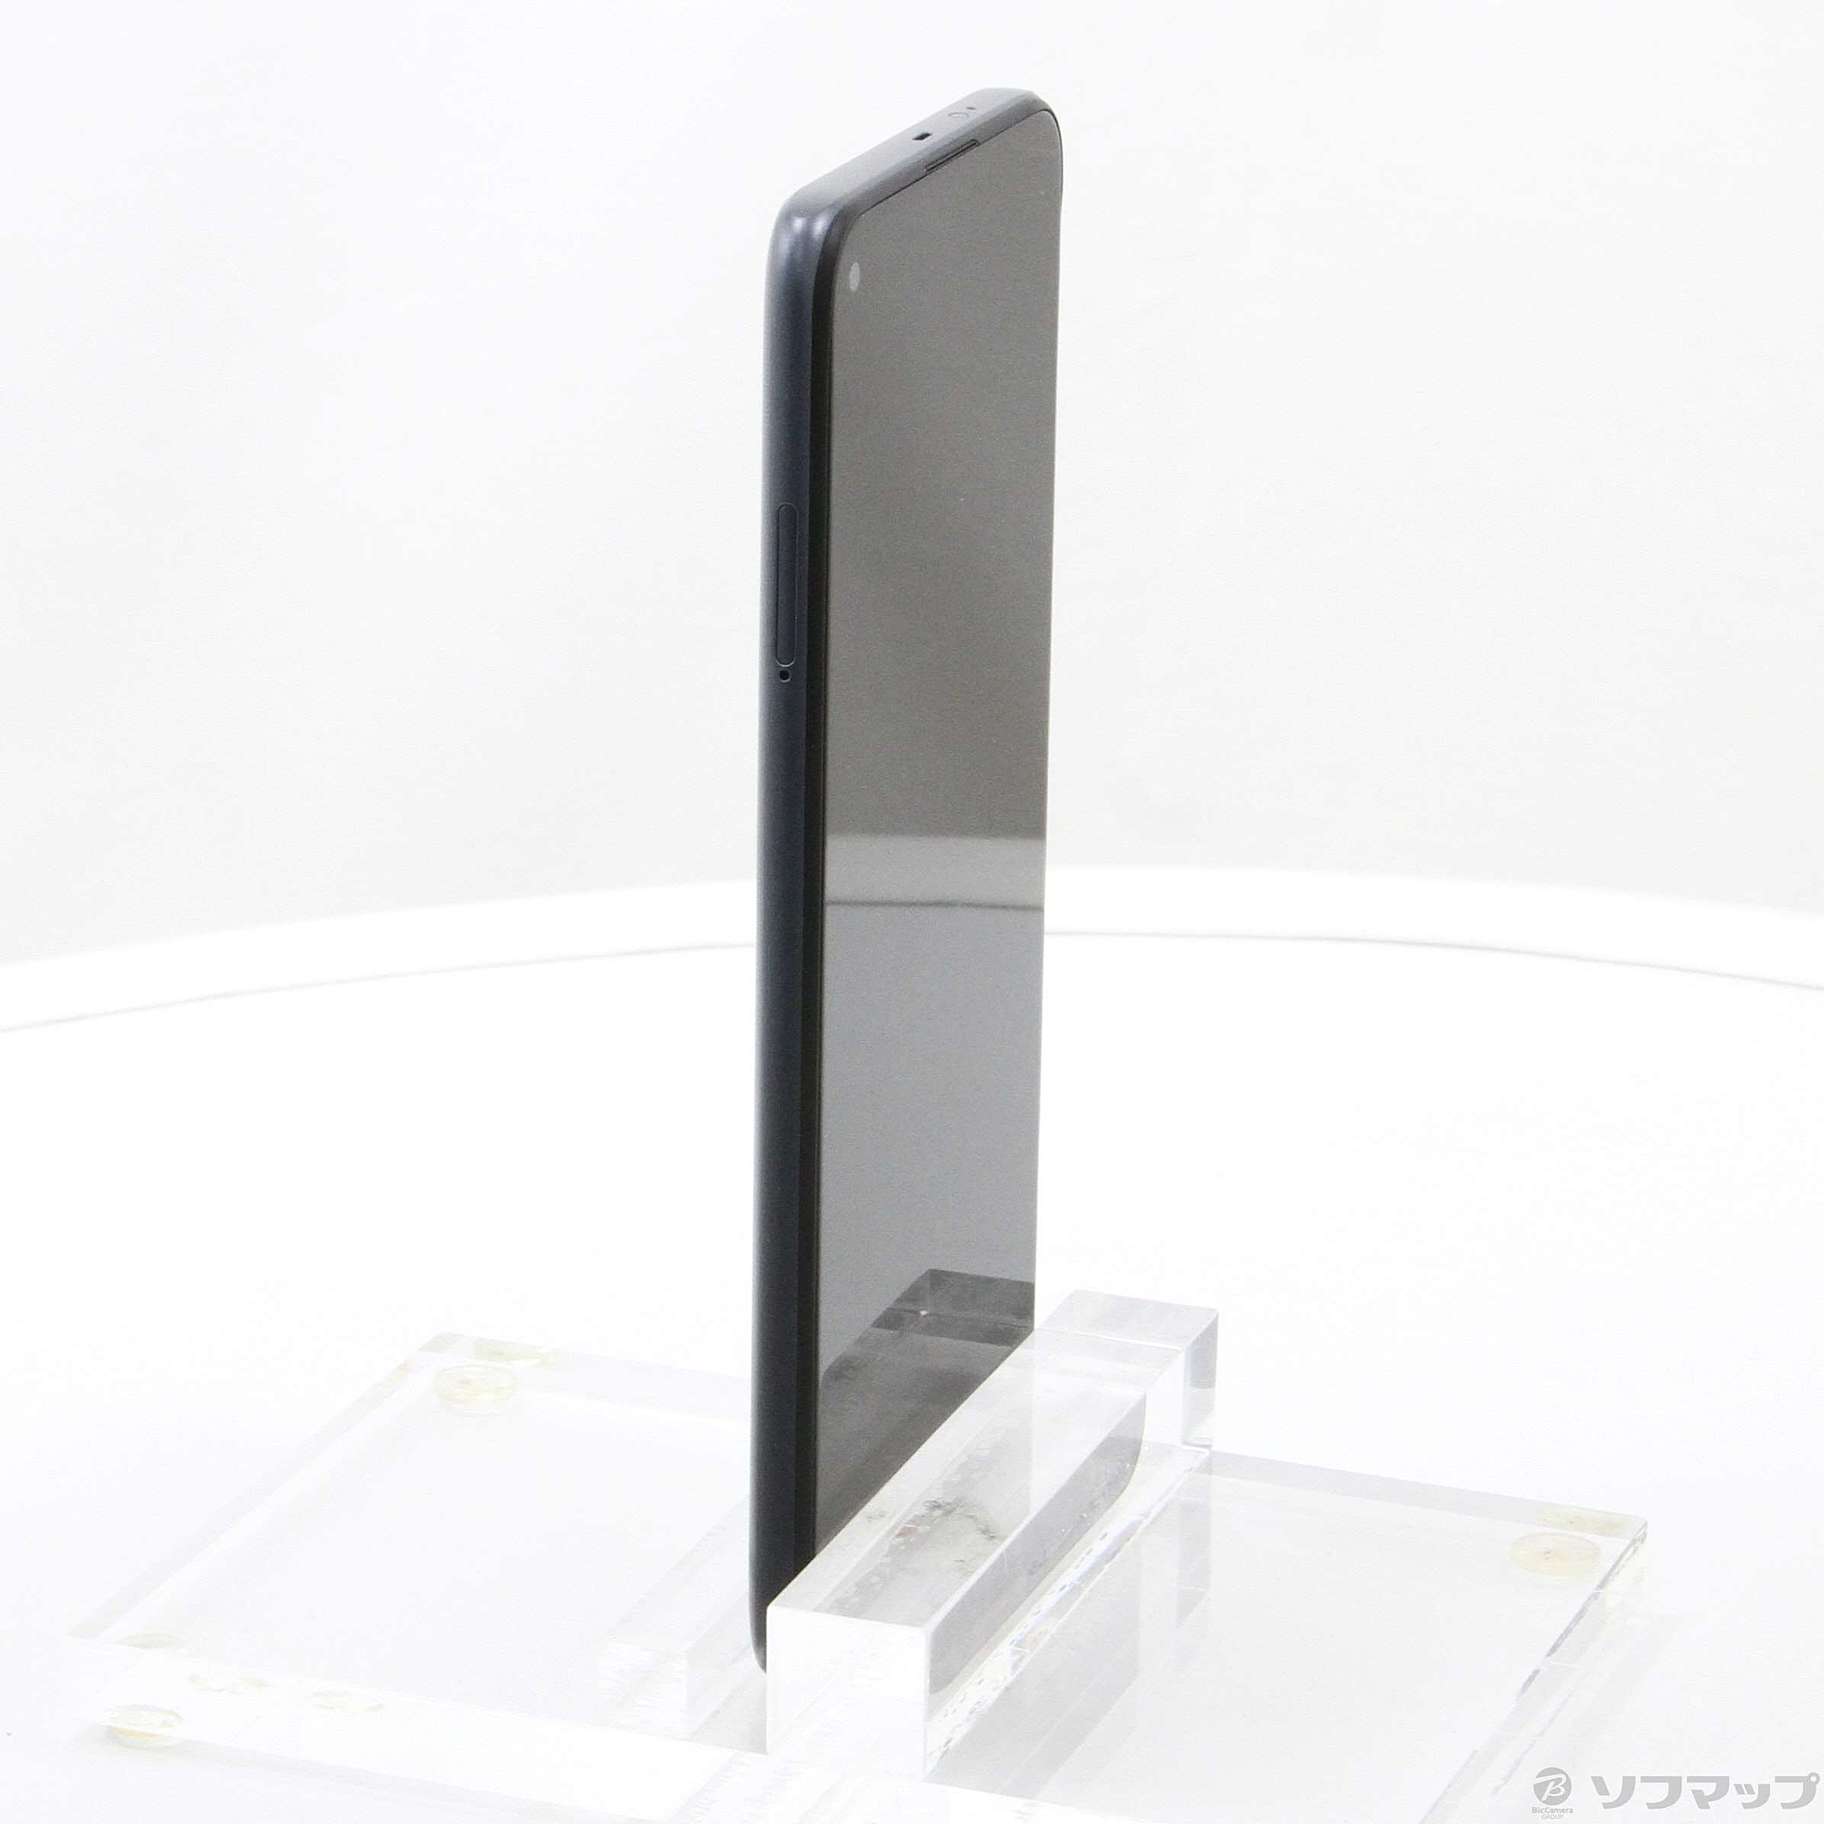 中古】Redmi Note 9T 64GB ナイトフォールブラック A001XM SoftBank